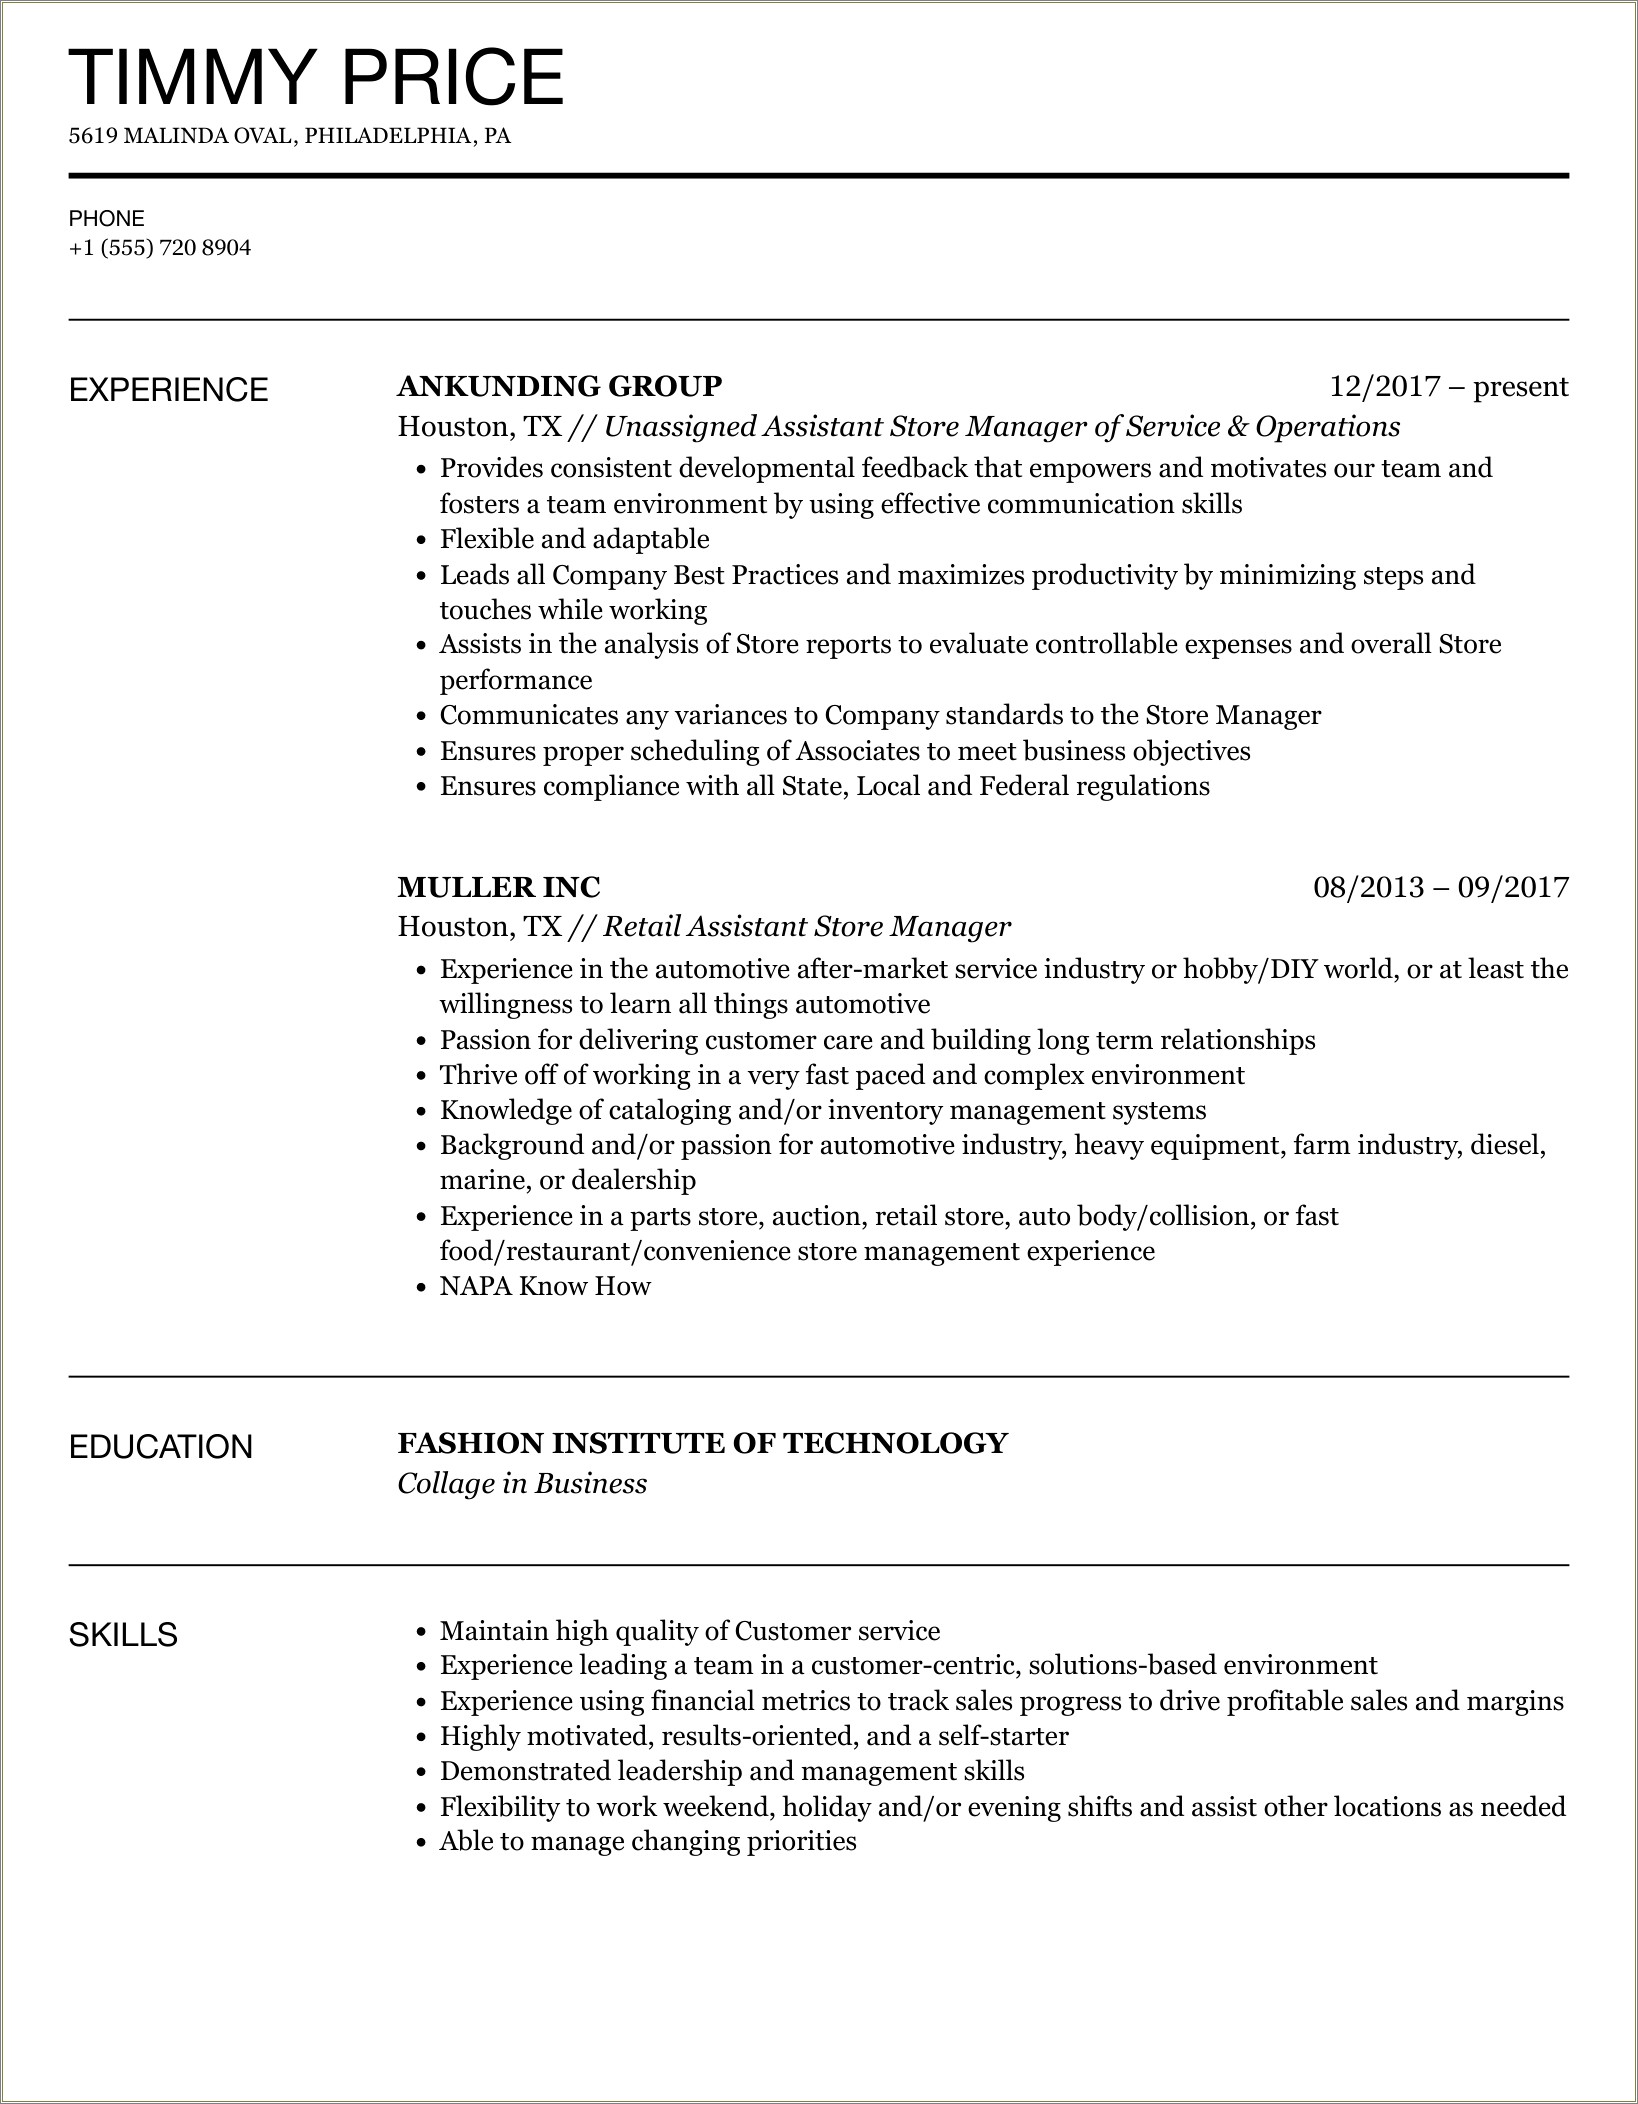 Liquor Store Manager Job Description For Resume